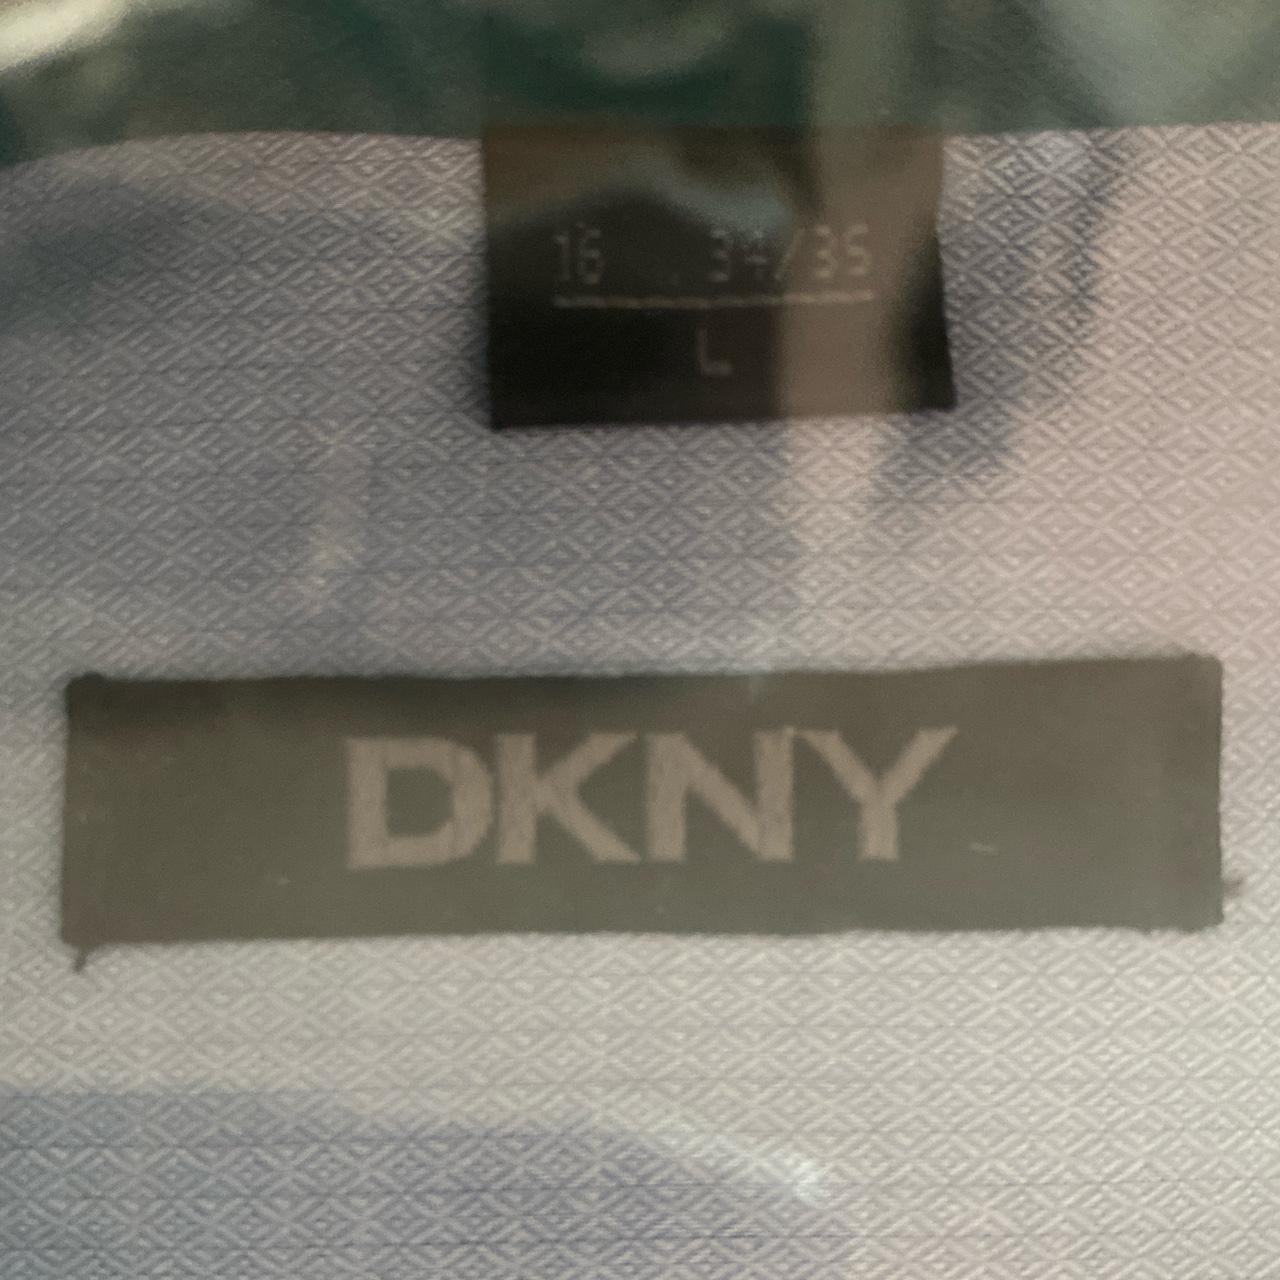 NEW DKNY Dress Shirt ~size: 16 34/35 #DKNY... - Depop